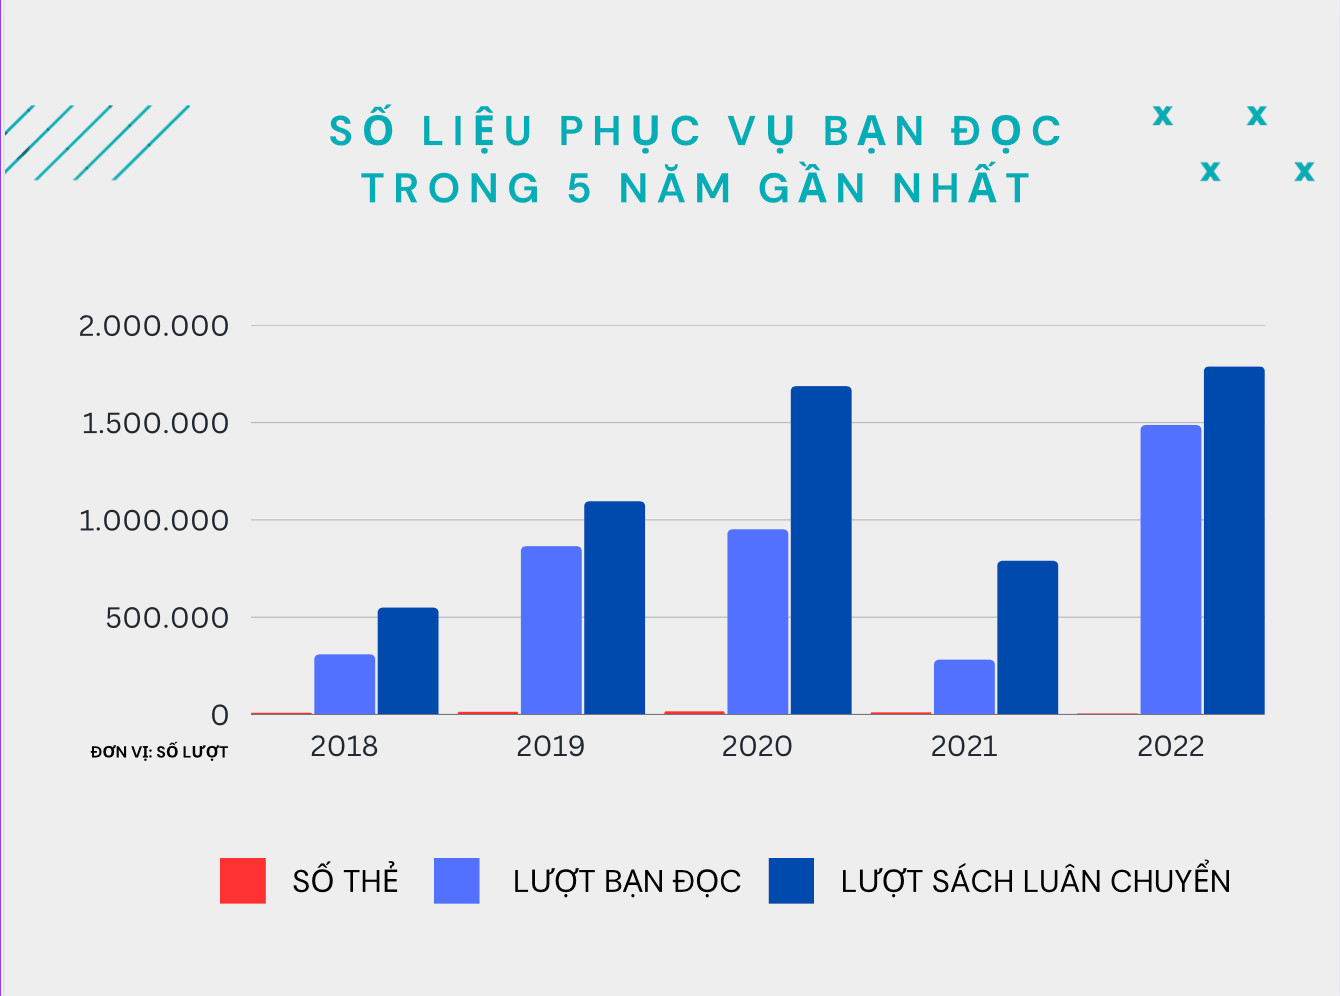 Số liệu phục vụ bạn đọc trong 5 năm qua (2018 - 2022) của Thư viện H&agrave; Nội.